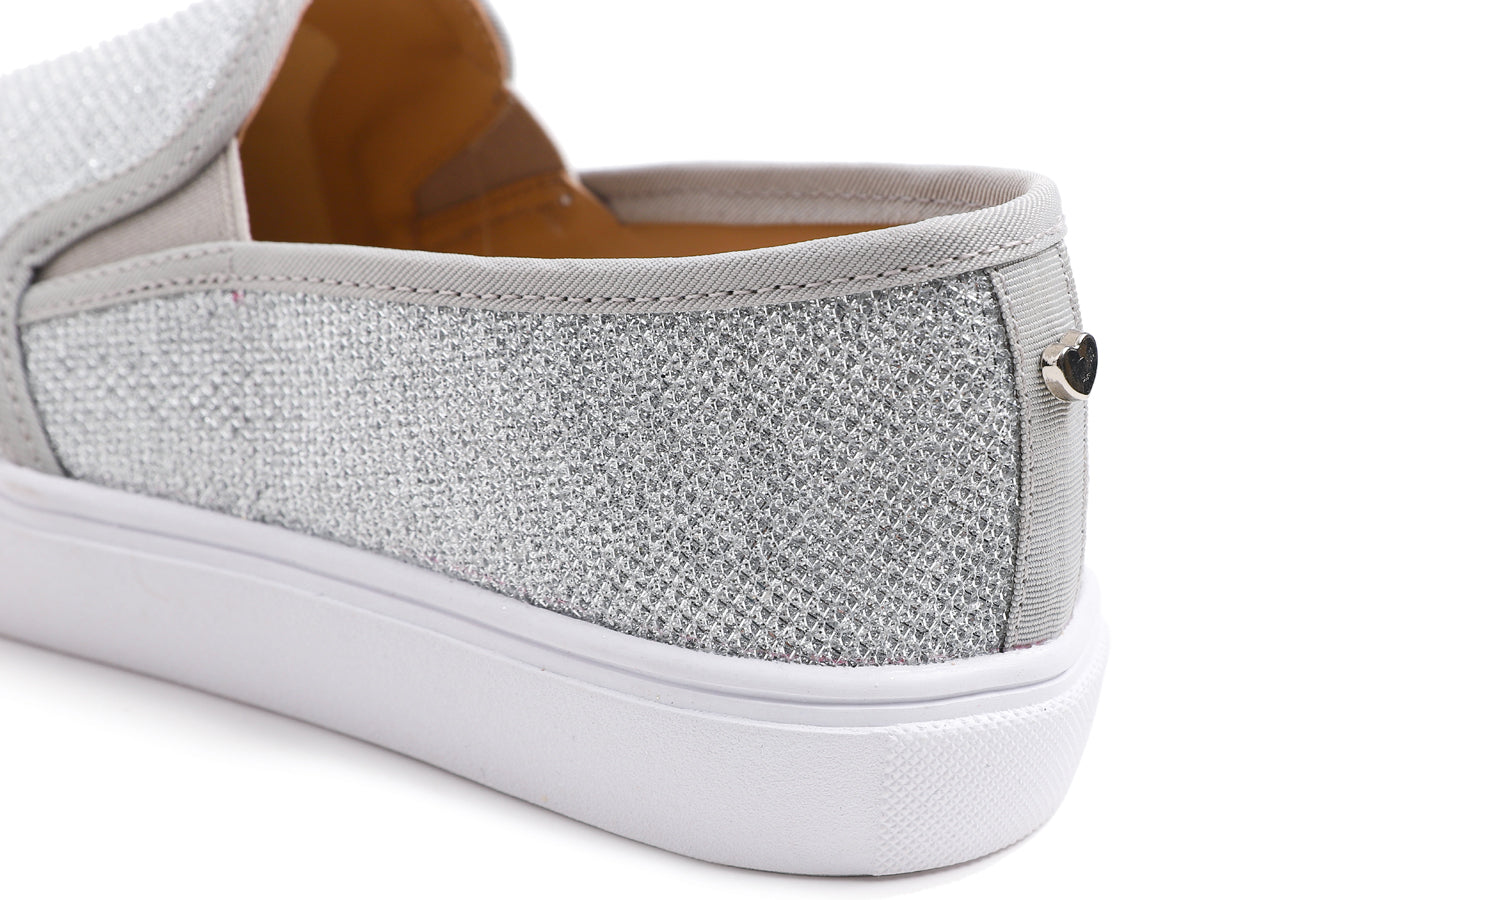 Feversole Women's Lurex Silver Slip On Sneaker Casual Flat Loafers